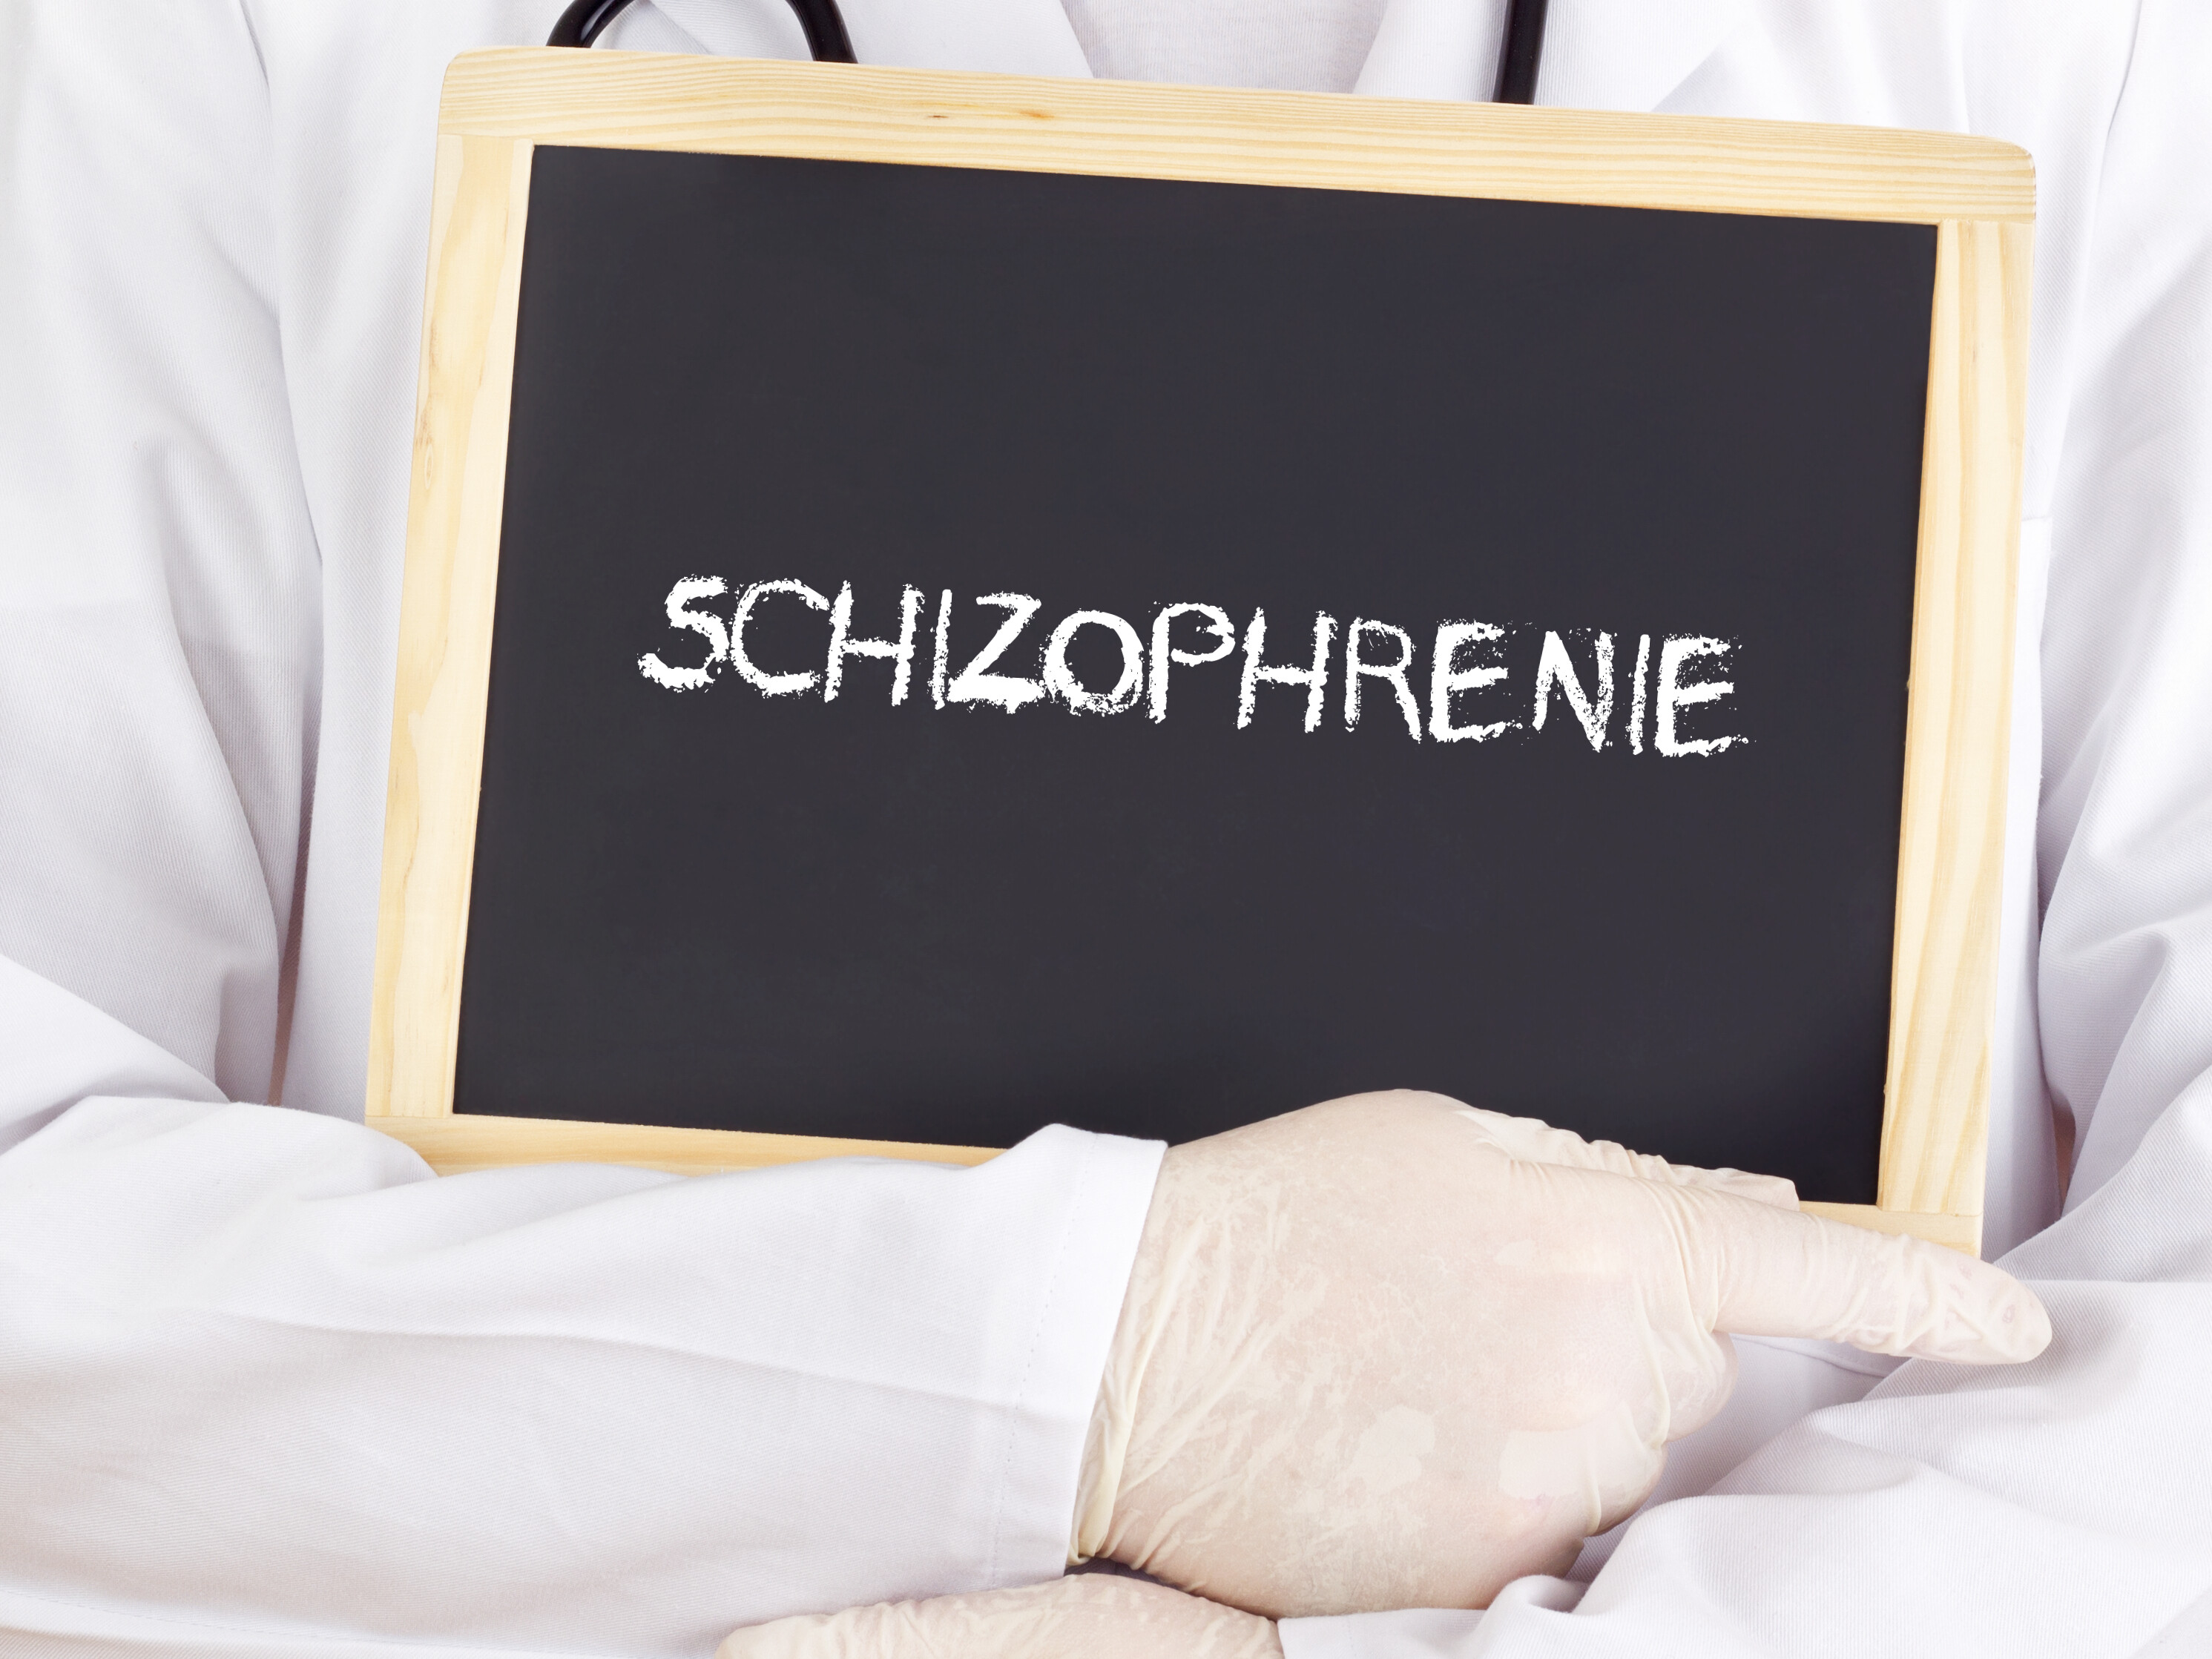 Die Mutation, die von den Forschern mit Schizophrenie in Verbindung gebracht wird, beeinflusst die Balance der Chemikalien im Hirn, die die Nervenzellen-Aktivität regulieren. © gwolters / shutterstock.com